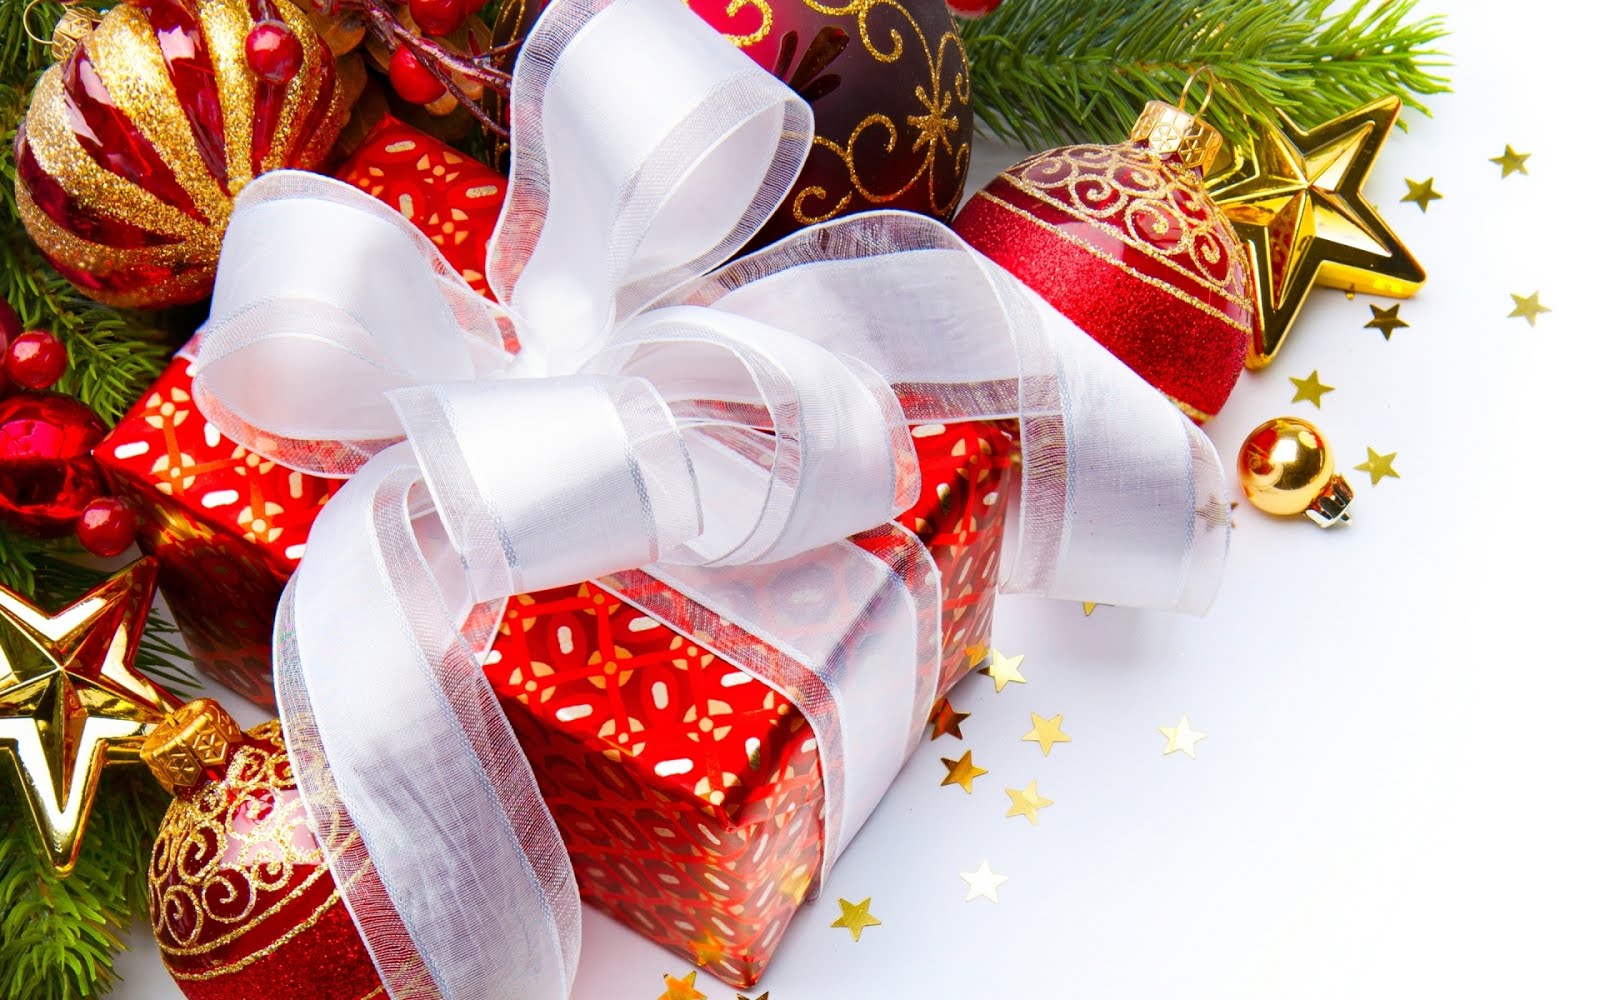 Bolas, De, Navidad Imágenes gratis en Pixabay - imagenes bolas de navidad